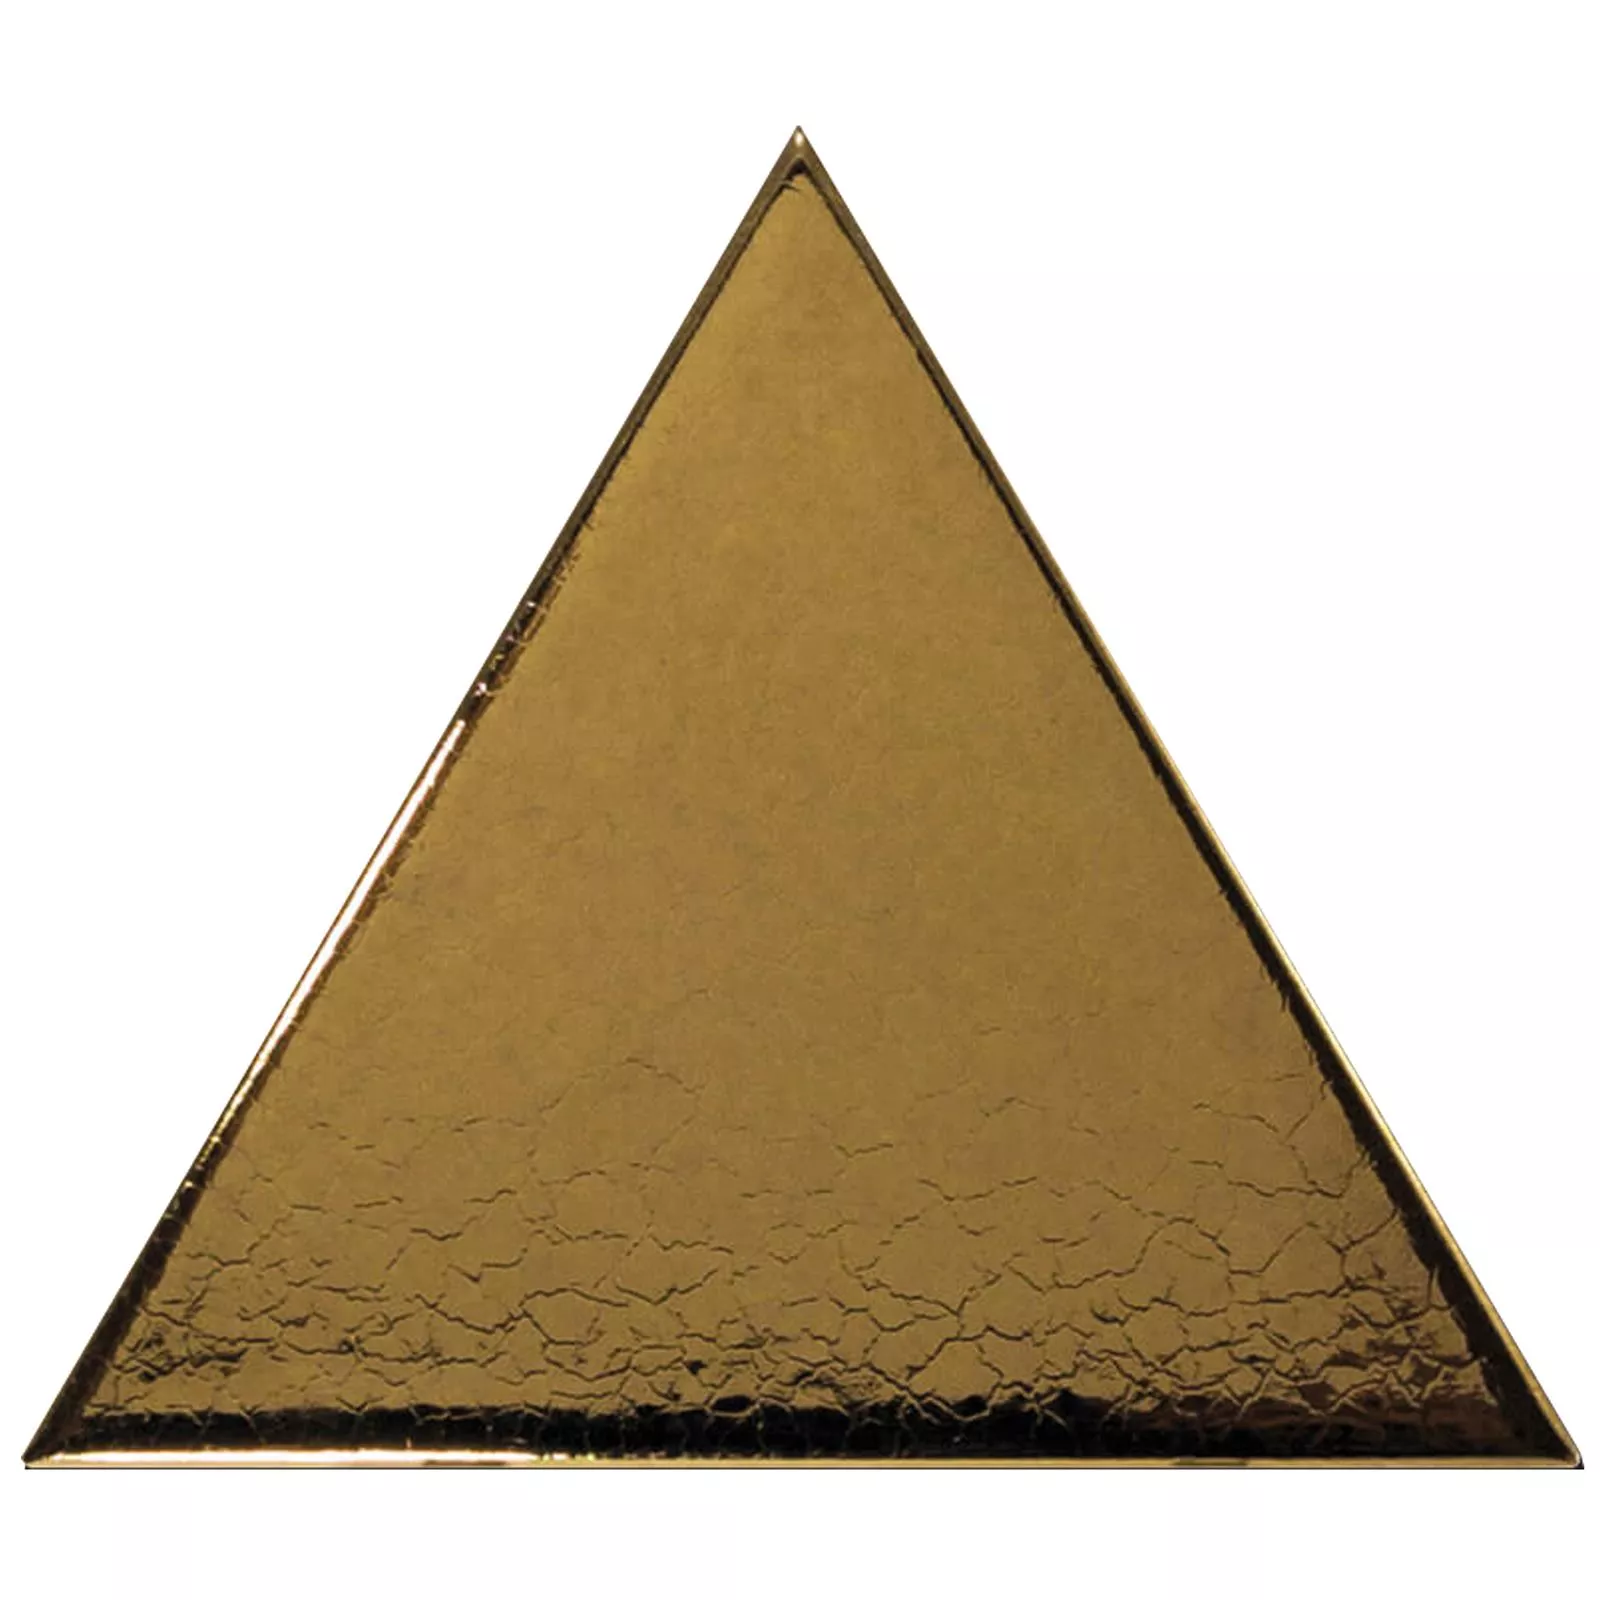 Sample Wall Tiles Britannia Triangle 10,8x12,4cm Gold